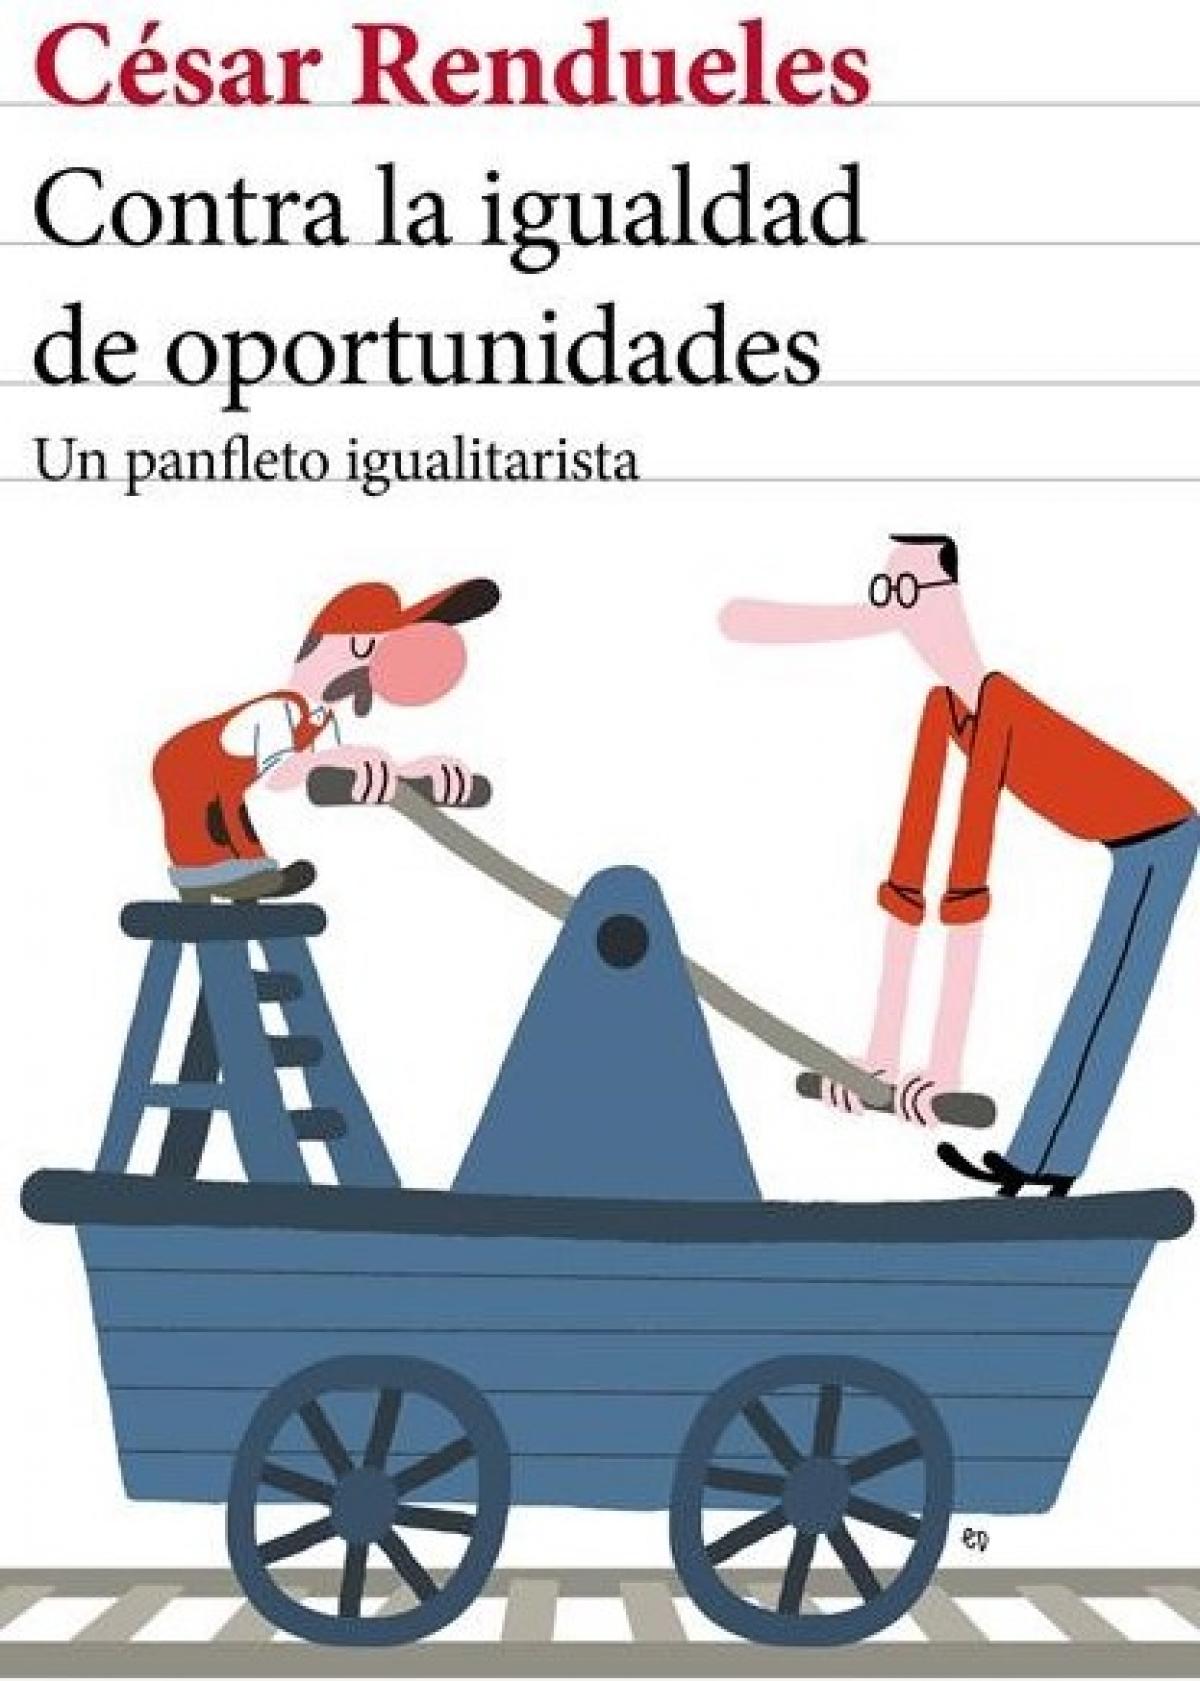 Portada del ensayo "Contra la igualdad de oportunidades. Un panfleto igualitarista", de César Rendueles.